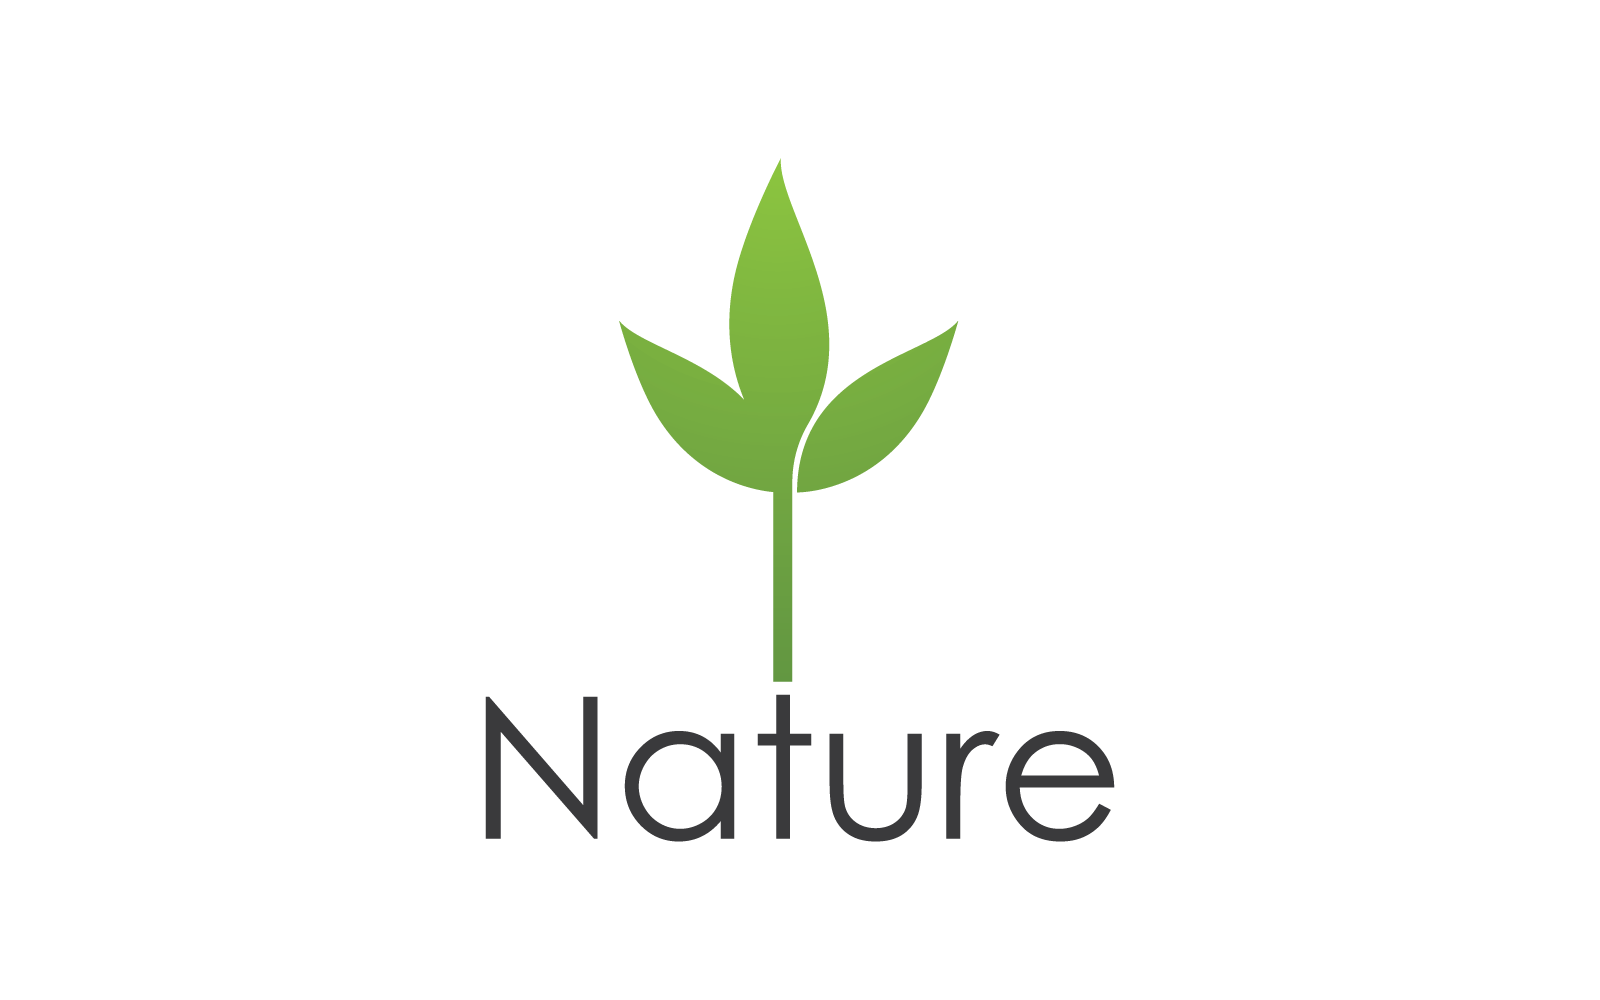 Eco green leaf illustration nature logo design